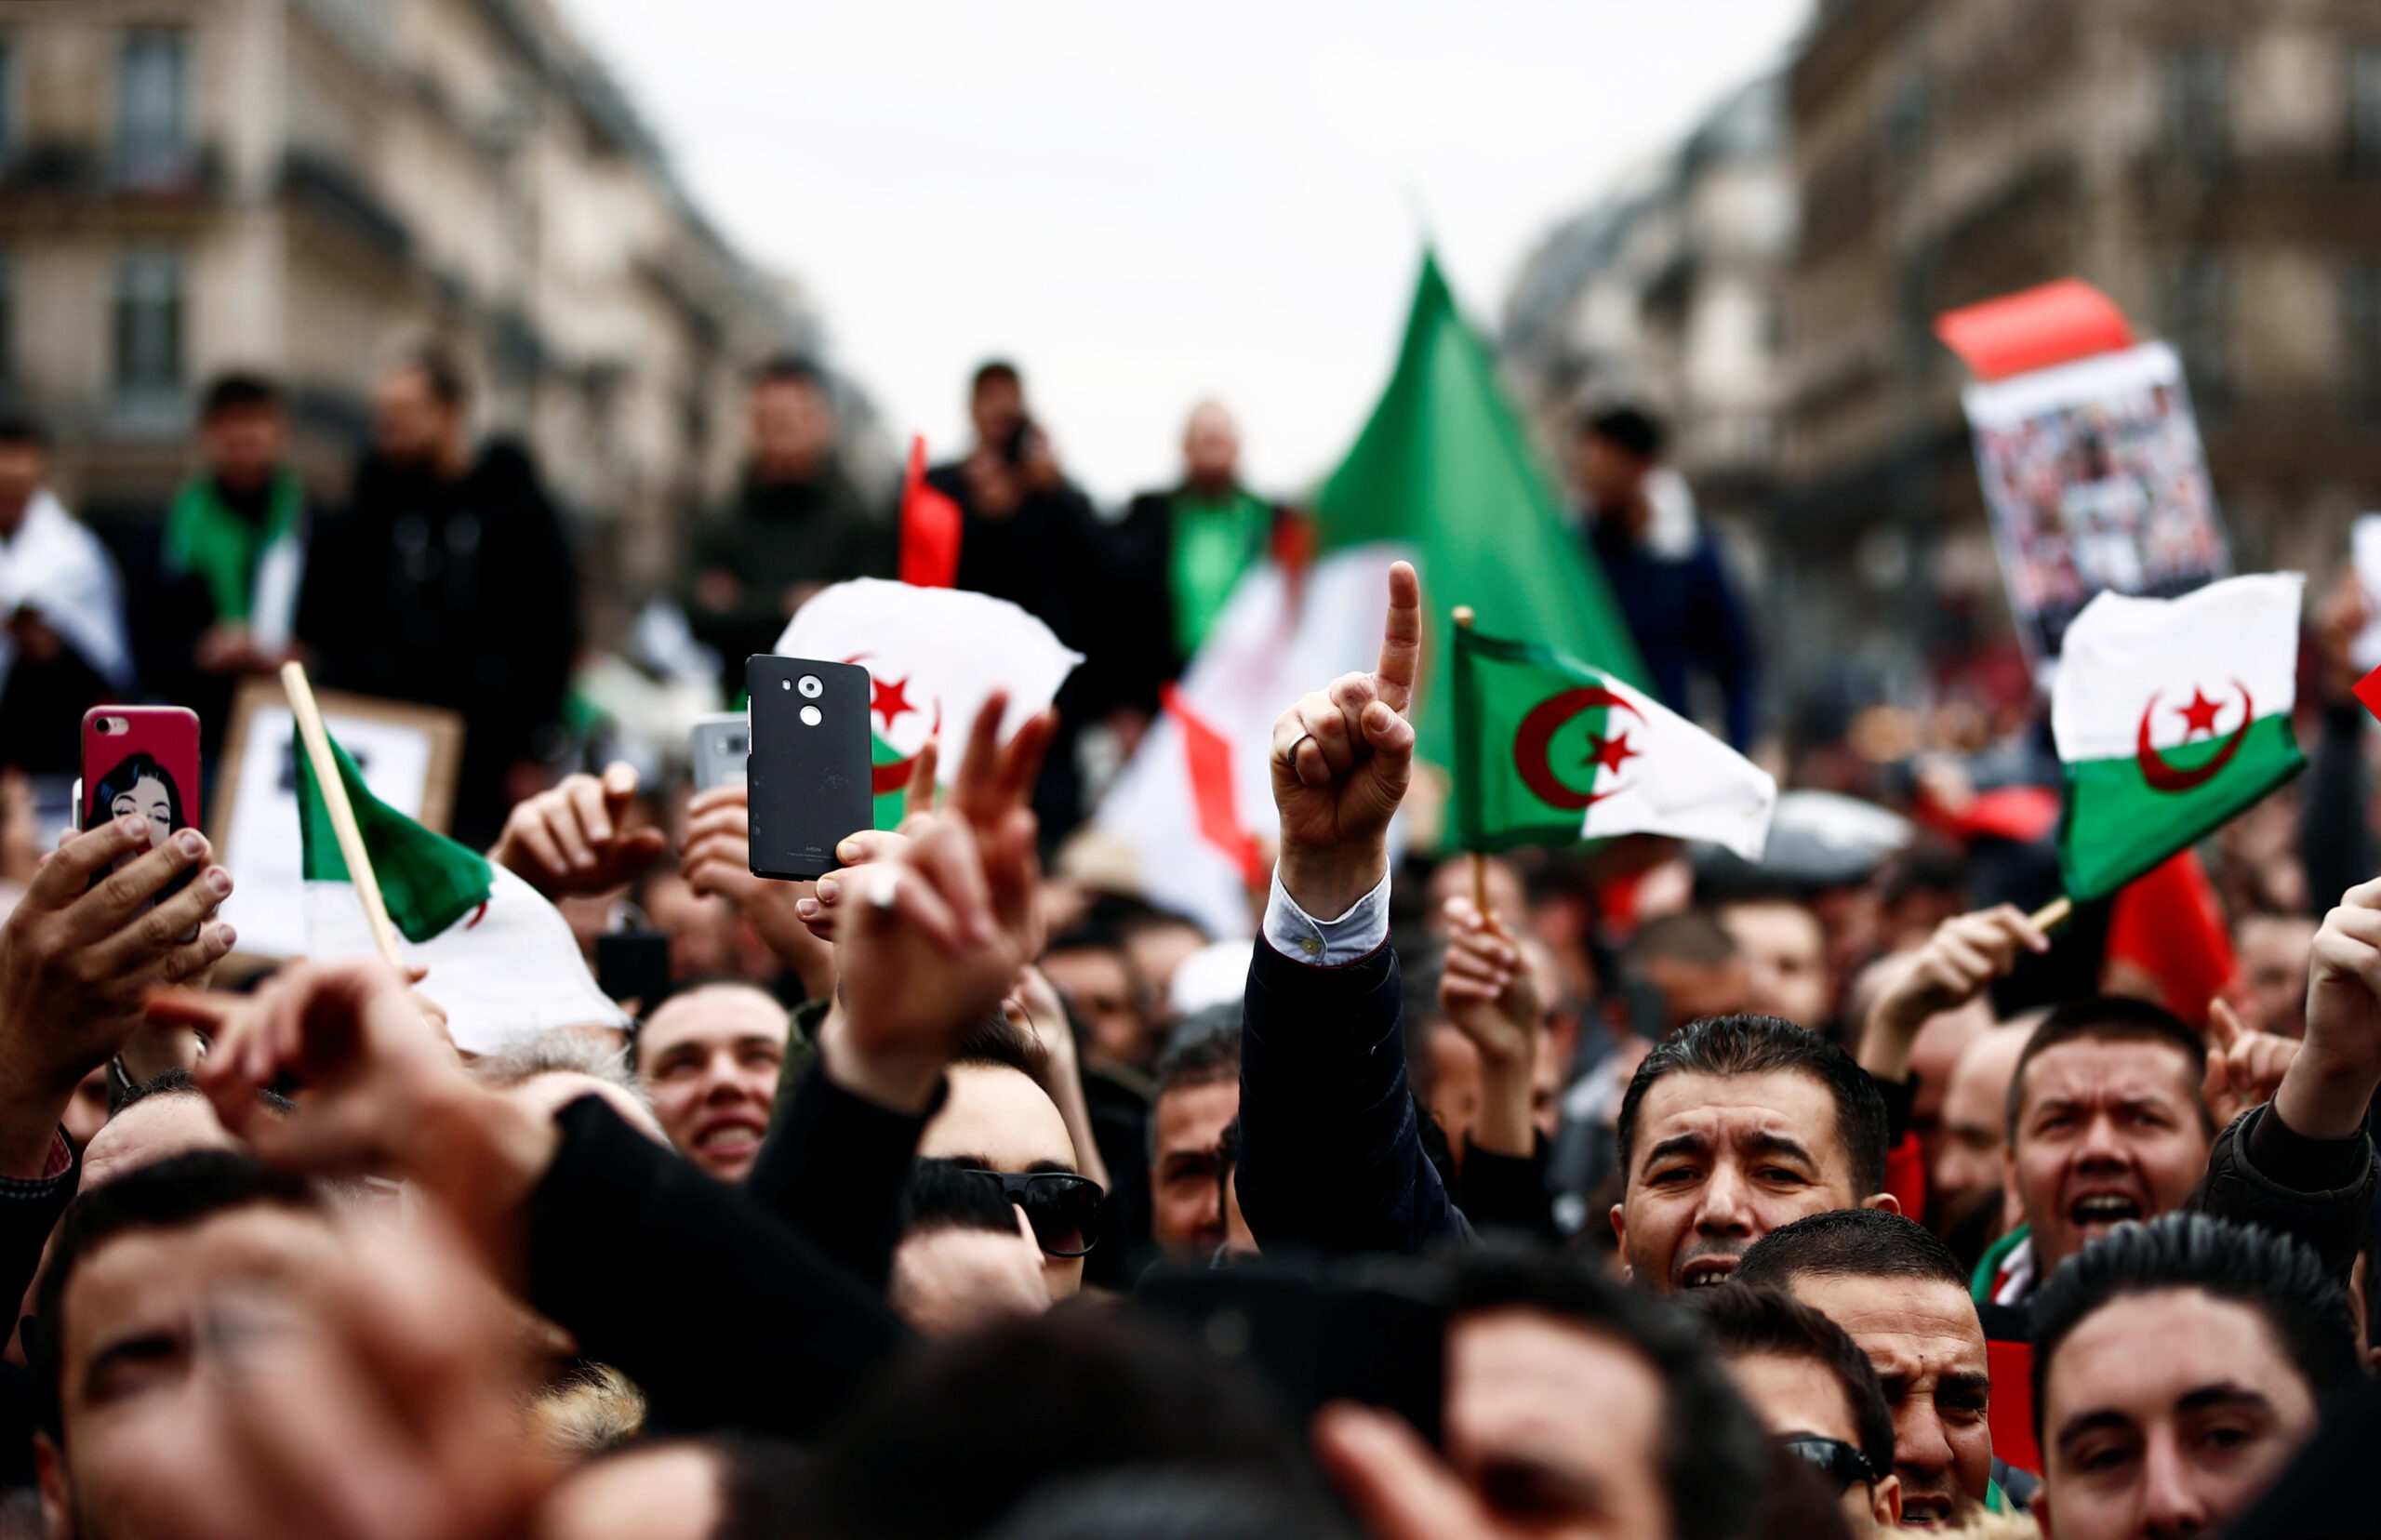 المعارضة الجزائرية تندد بمناخ “الترهيب” الذي يخيم على الأحزاب السياسية